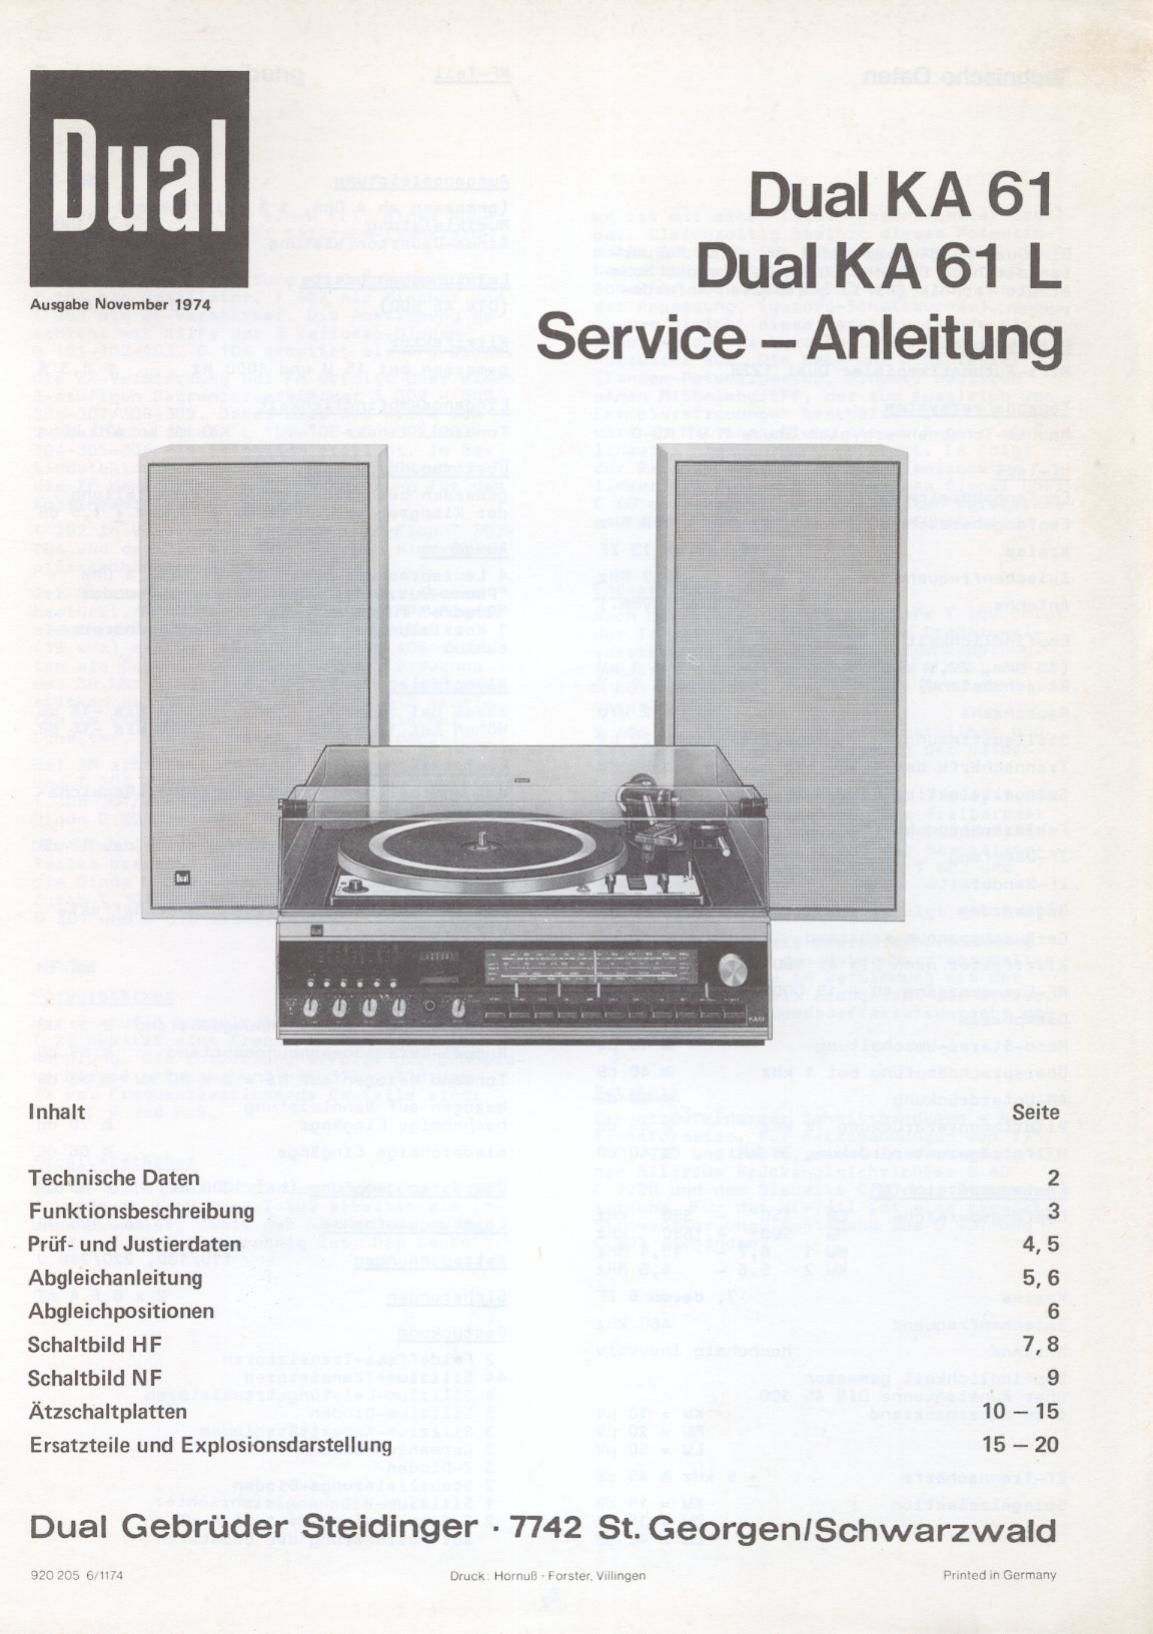 Dual KA 61 Service Manual